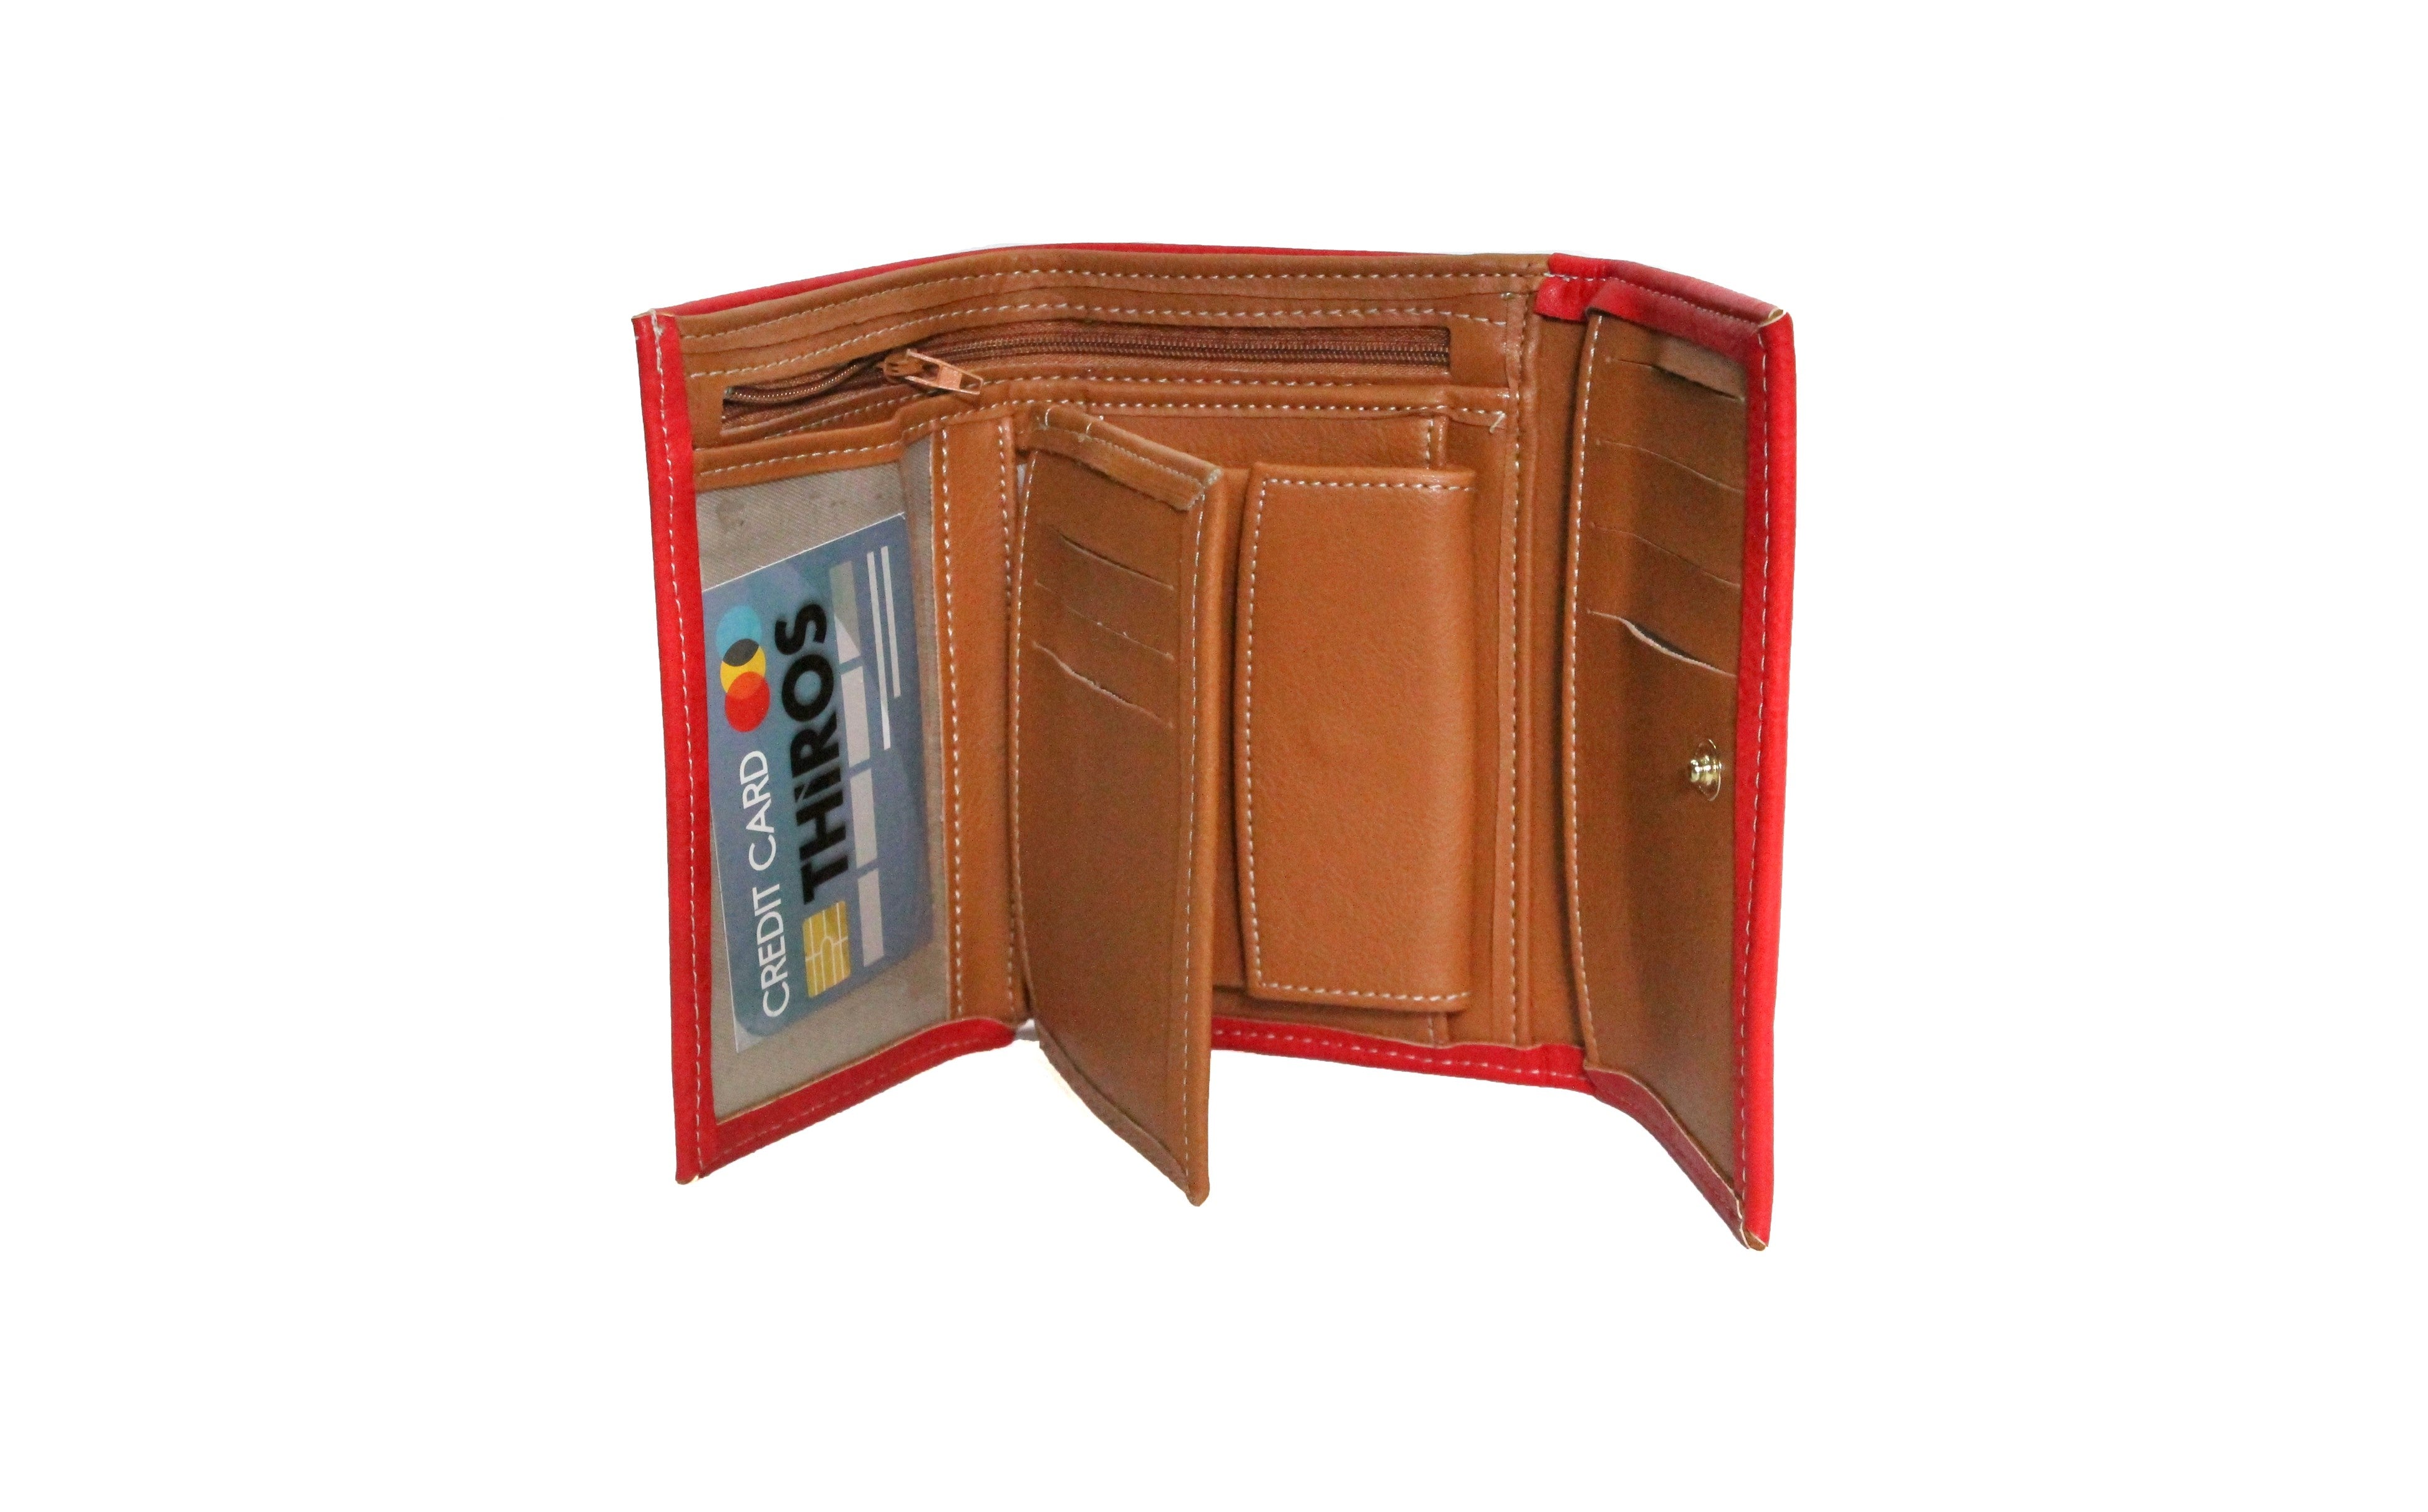 Bella wallet